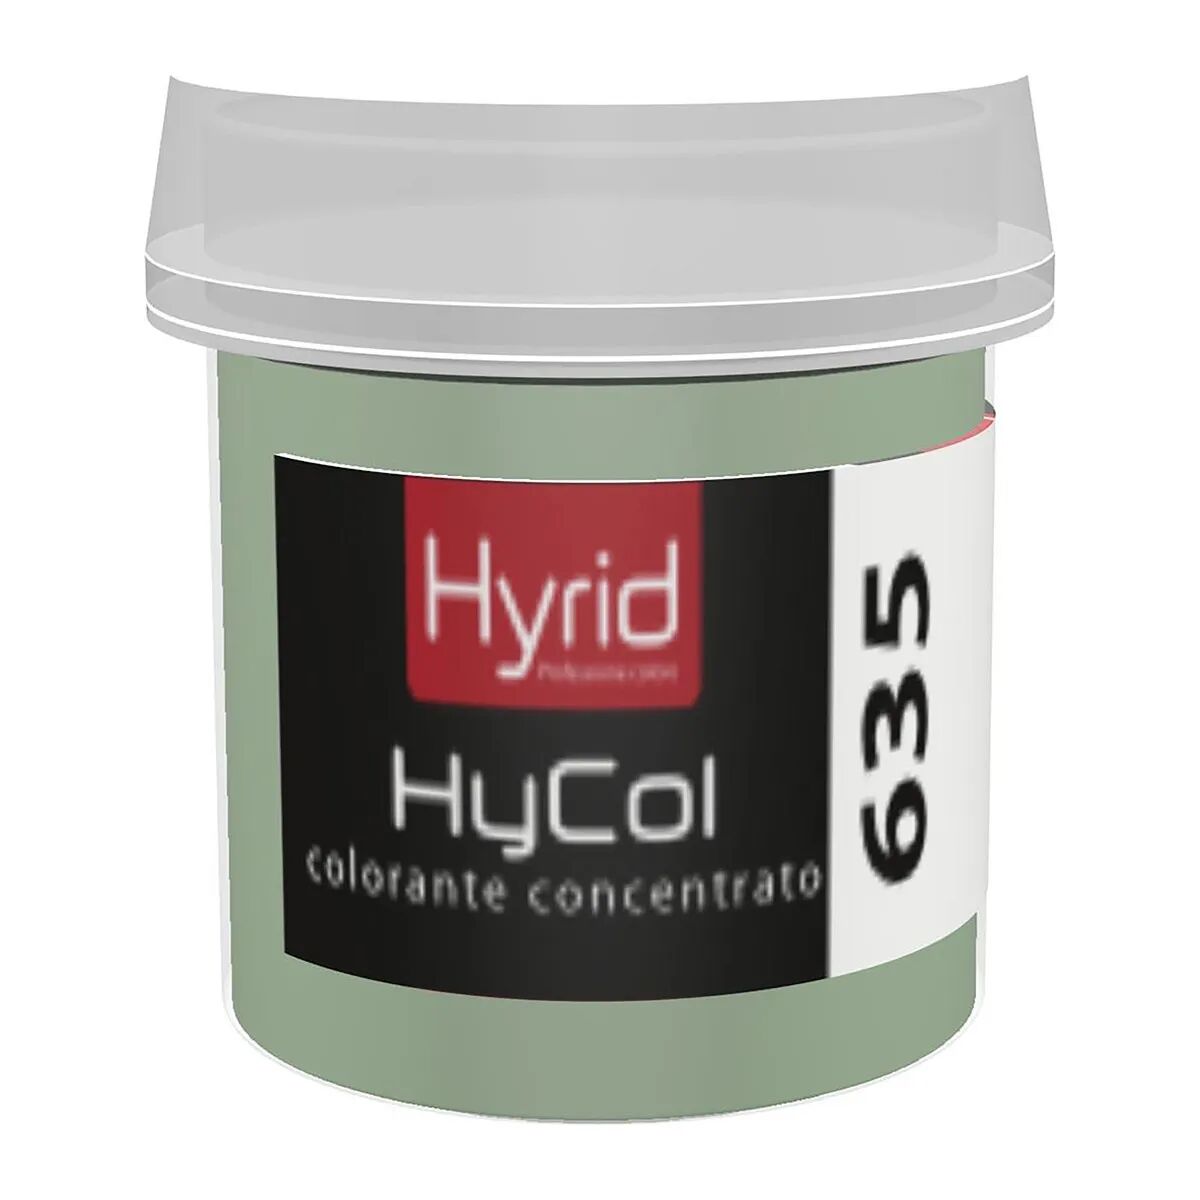 hyrid by covema colorante concentrato hycol 635 hyrid smeraldo medio 80 ml per finiture decorative